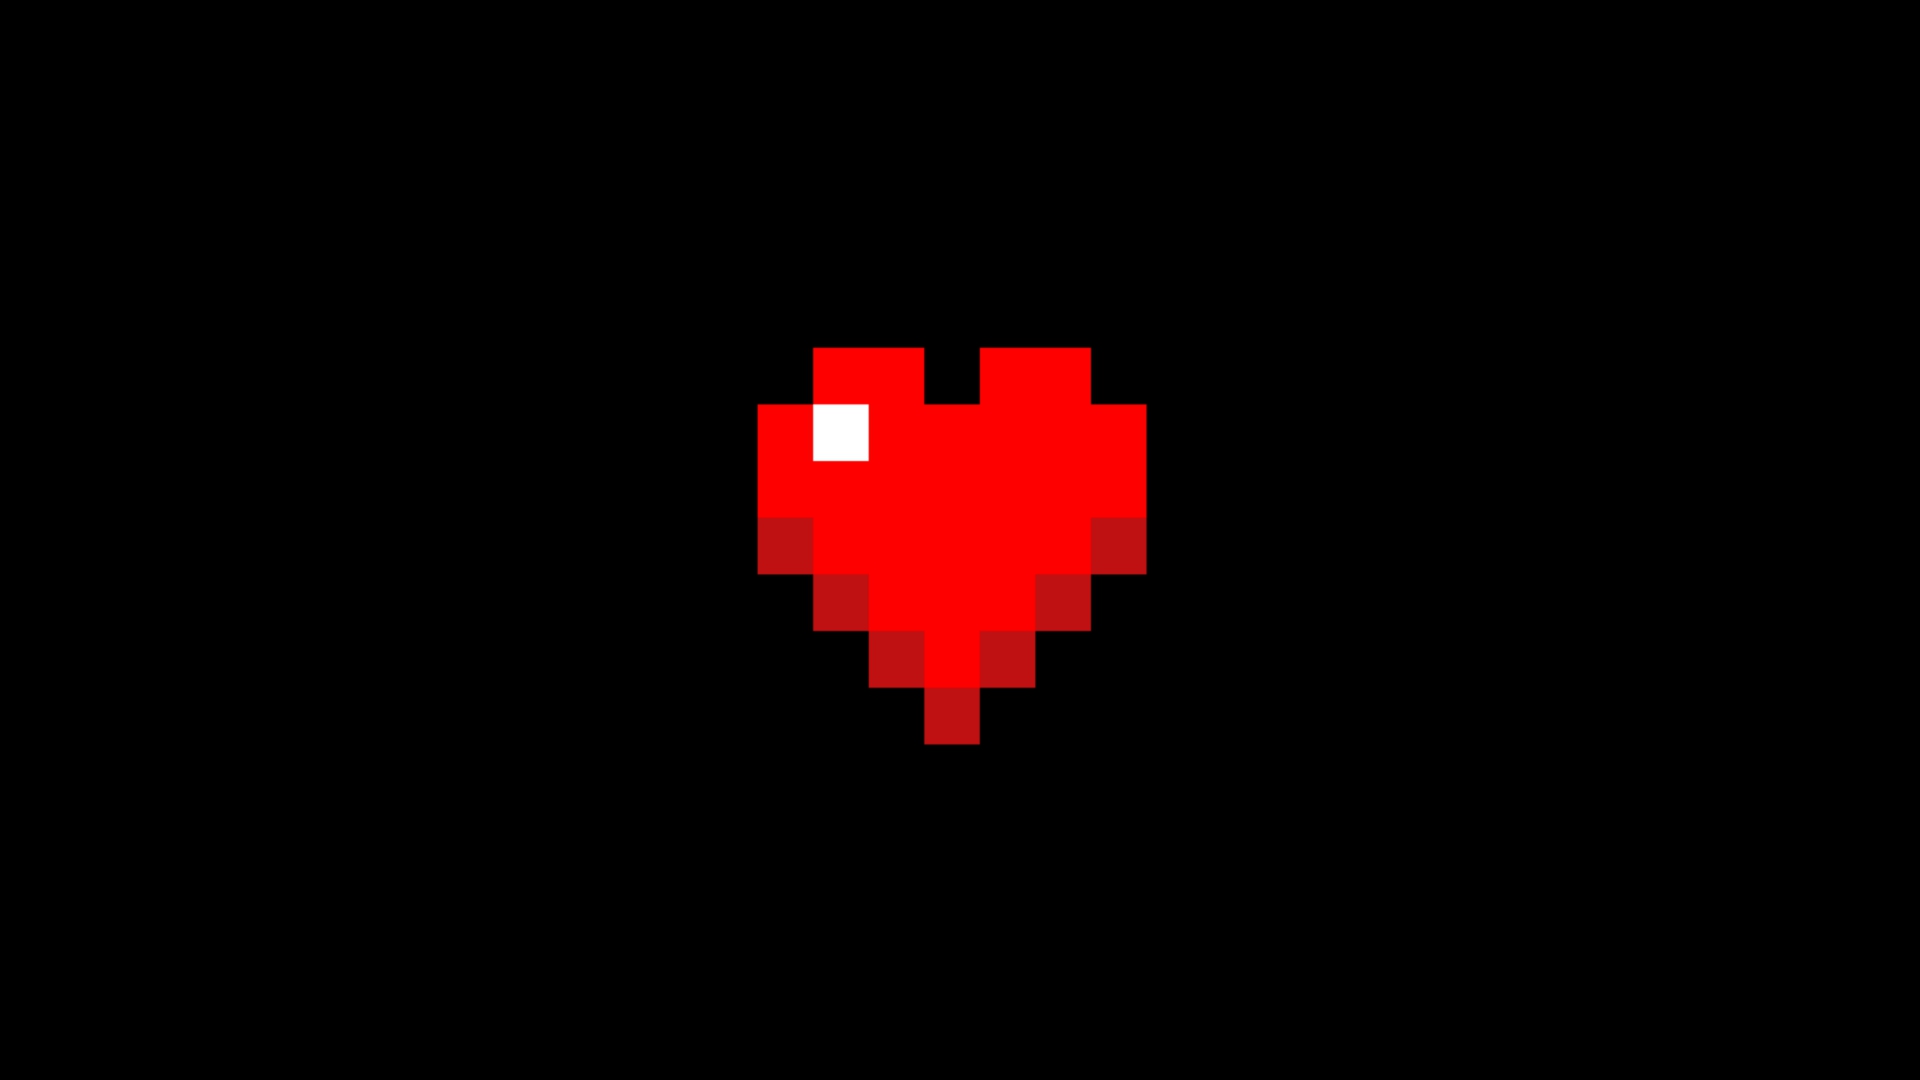 Heart 8 bit wallpaper